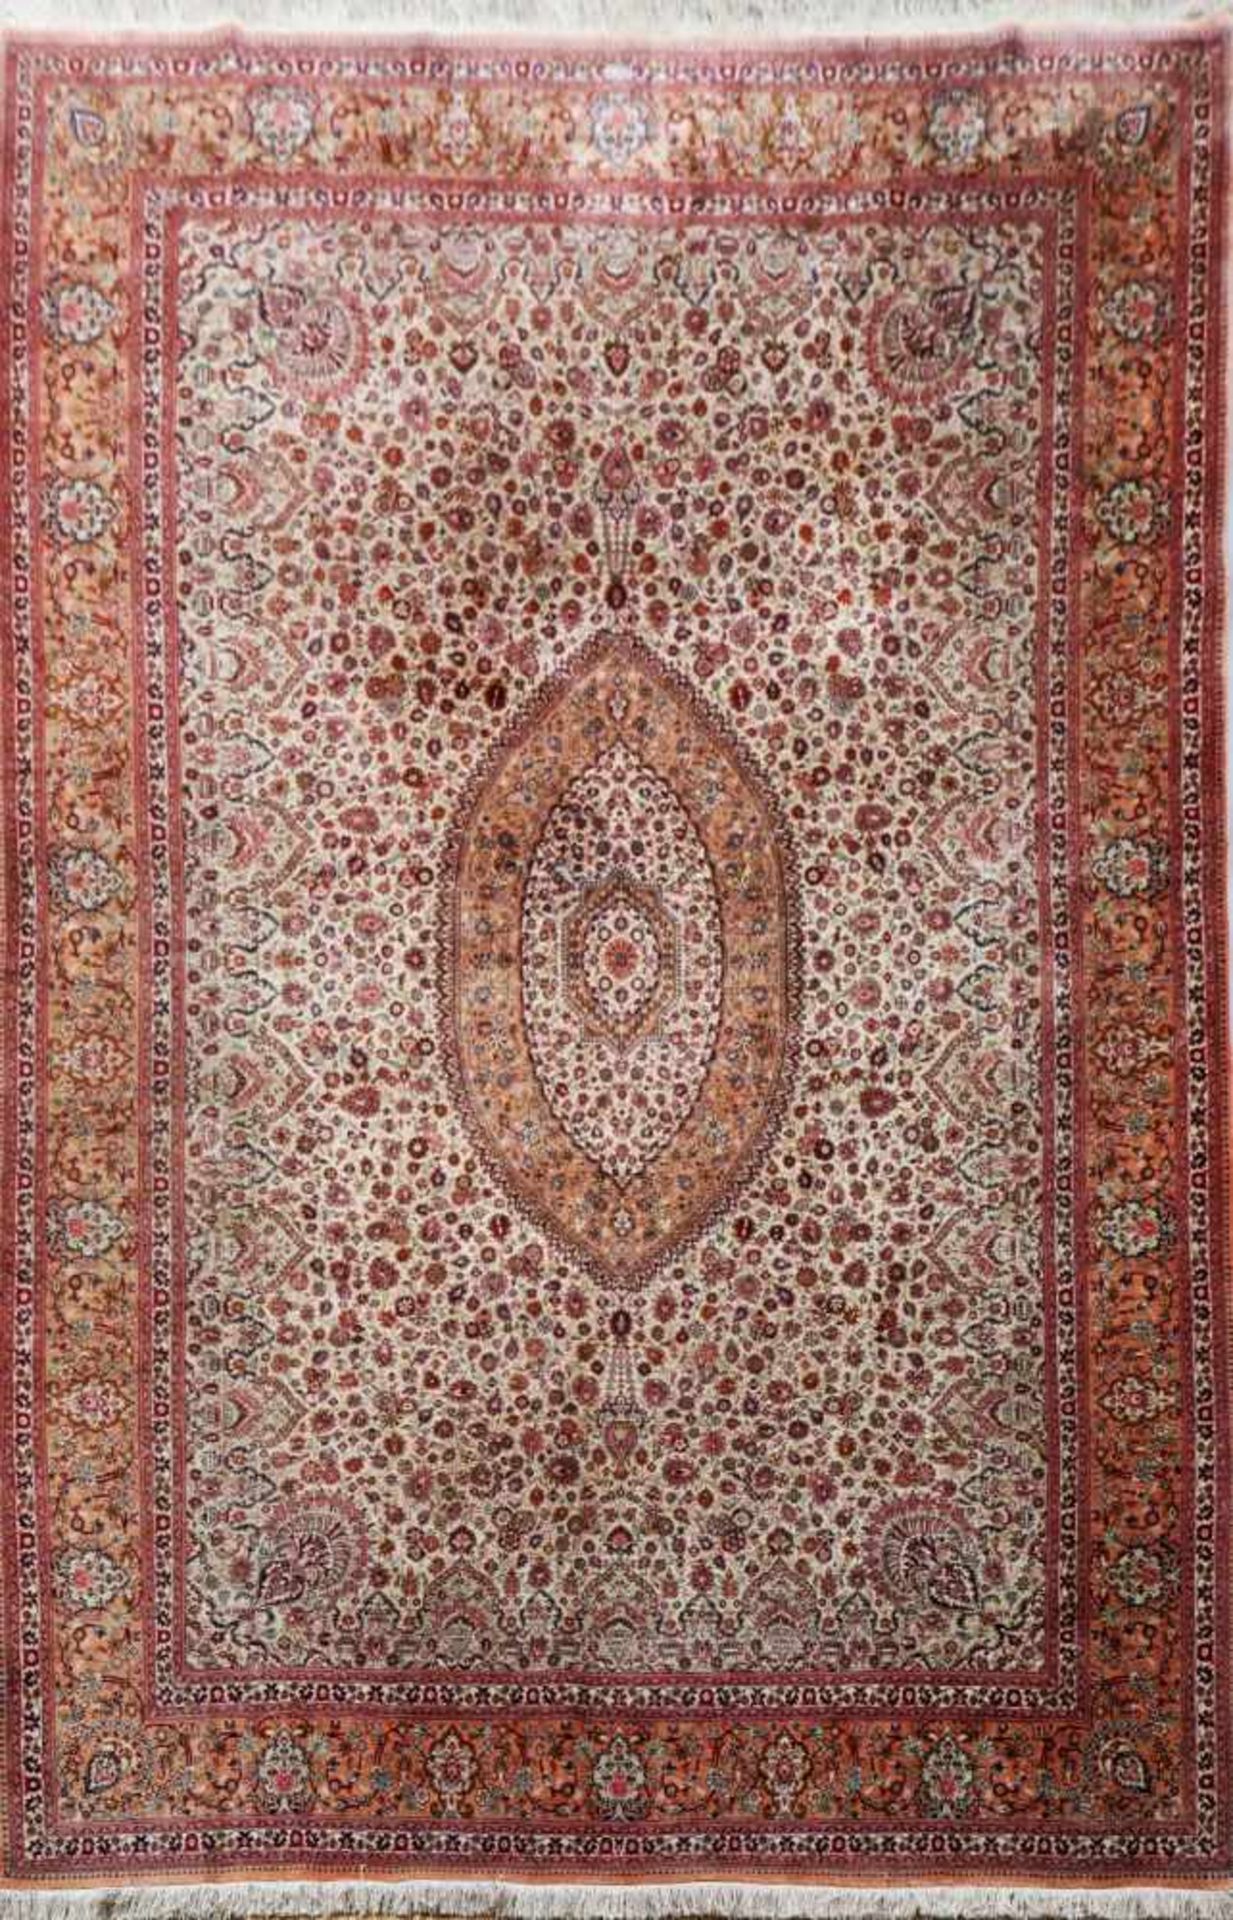 Seidenteppichwohl Isfahan, um 1980, hellgrundig, feines Floraldekor, ca. 200x300cm, über 1 Mio/m^2